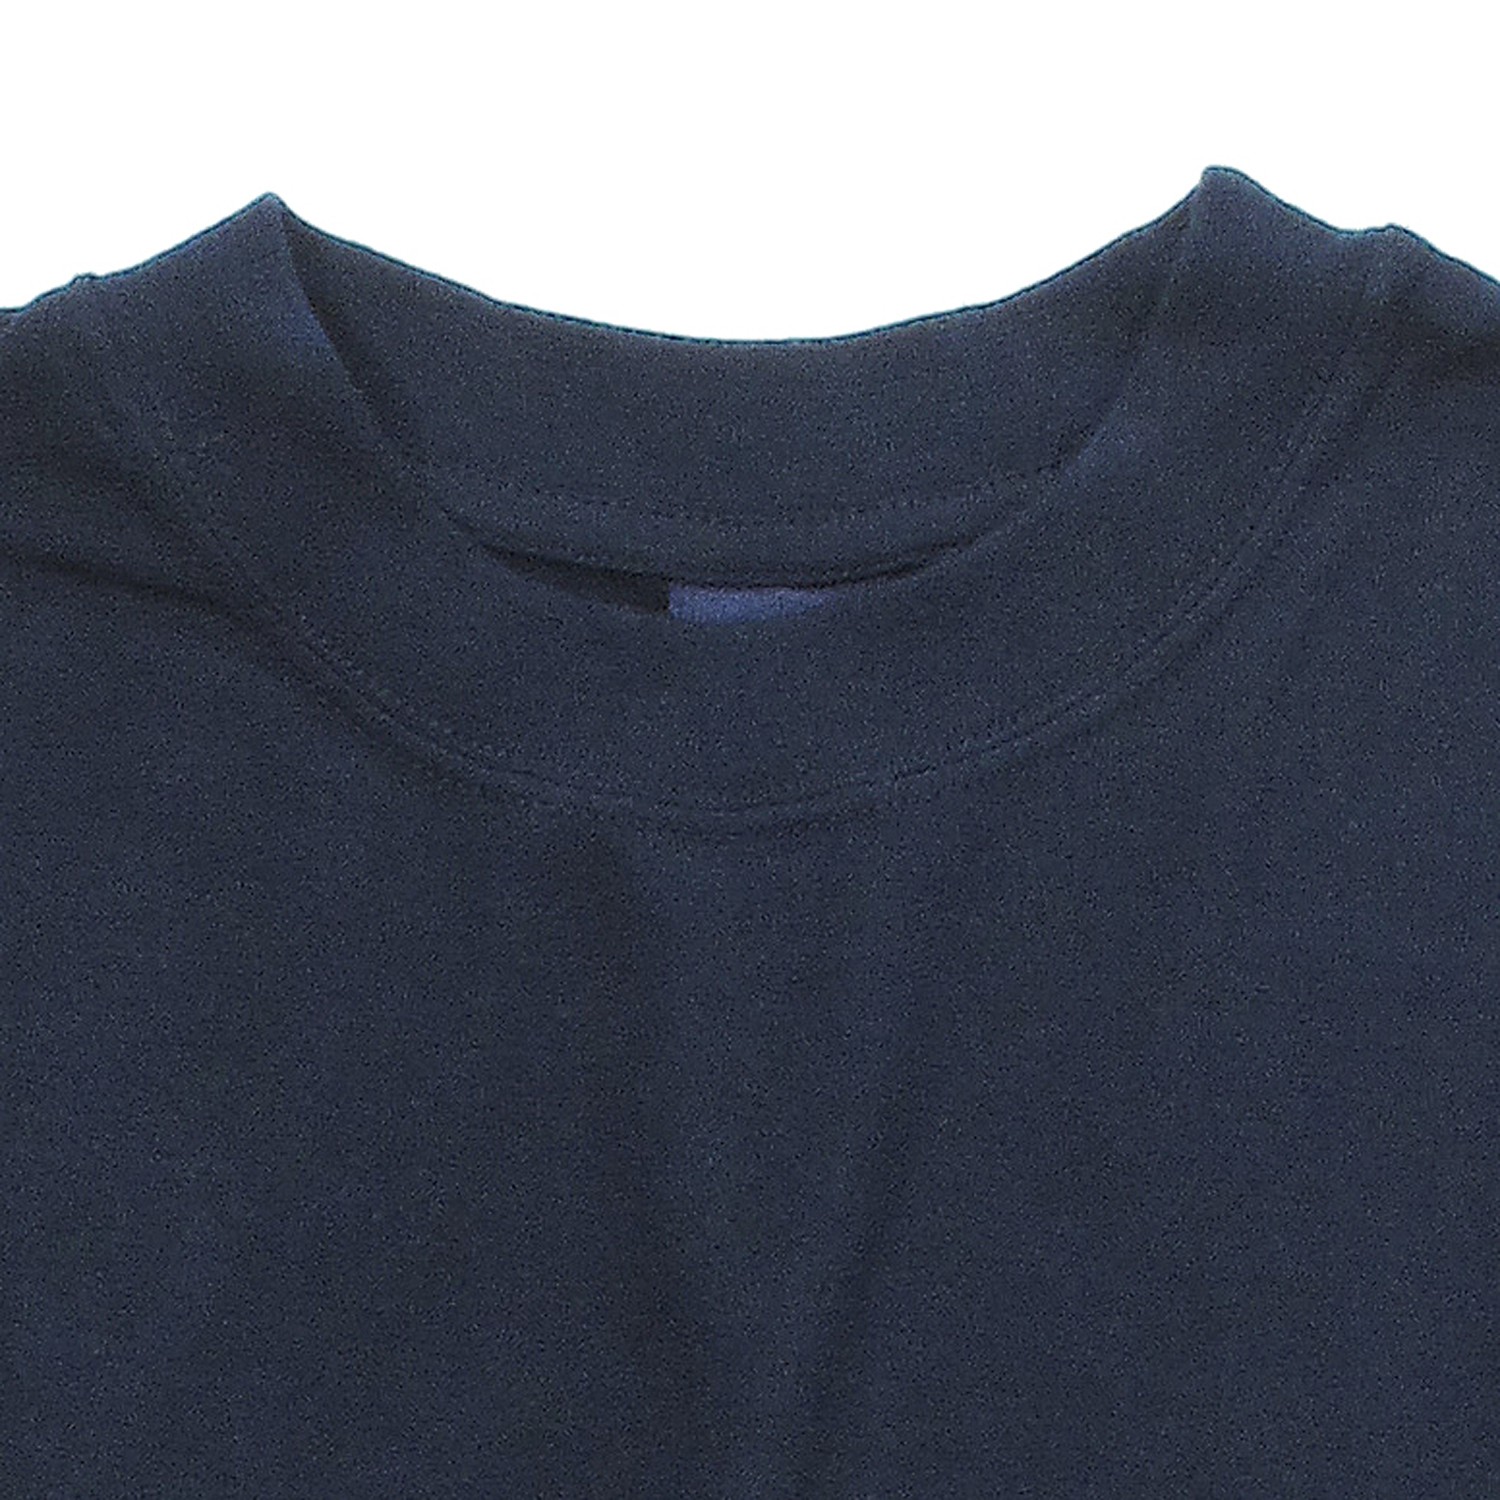 T-Shirt in der Farbe navy von Kapart // Bis 8XL